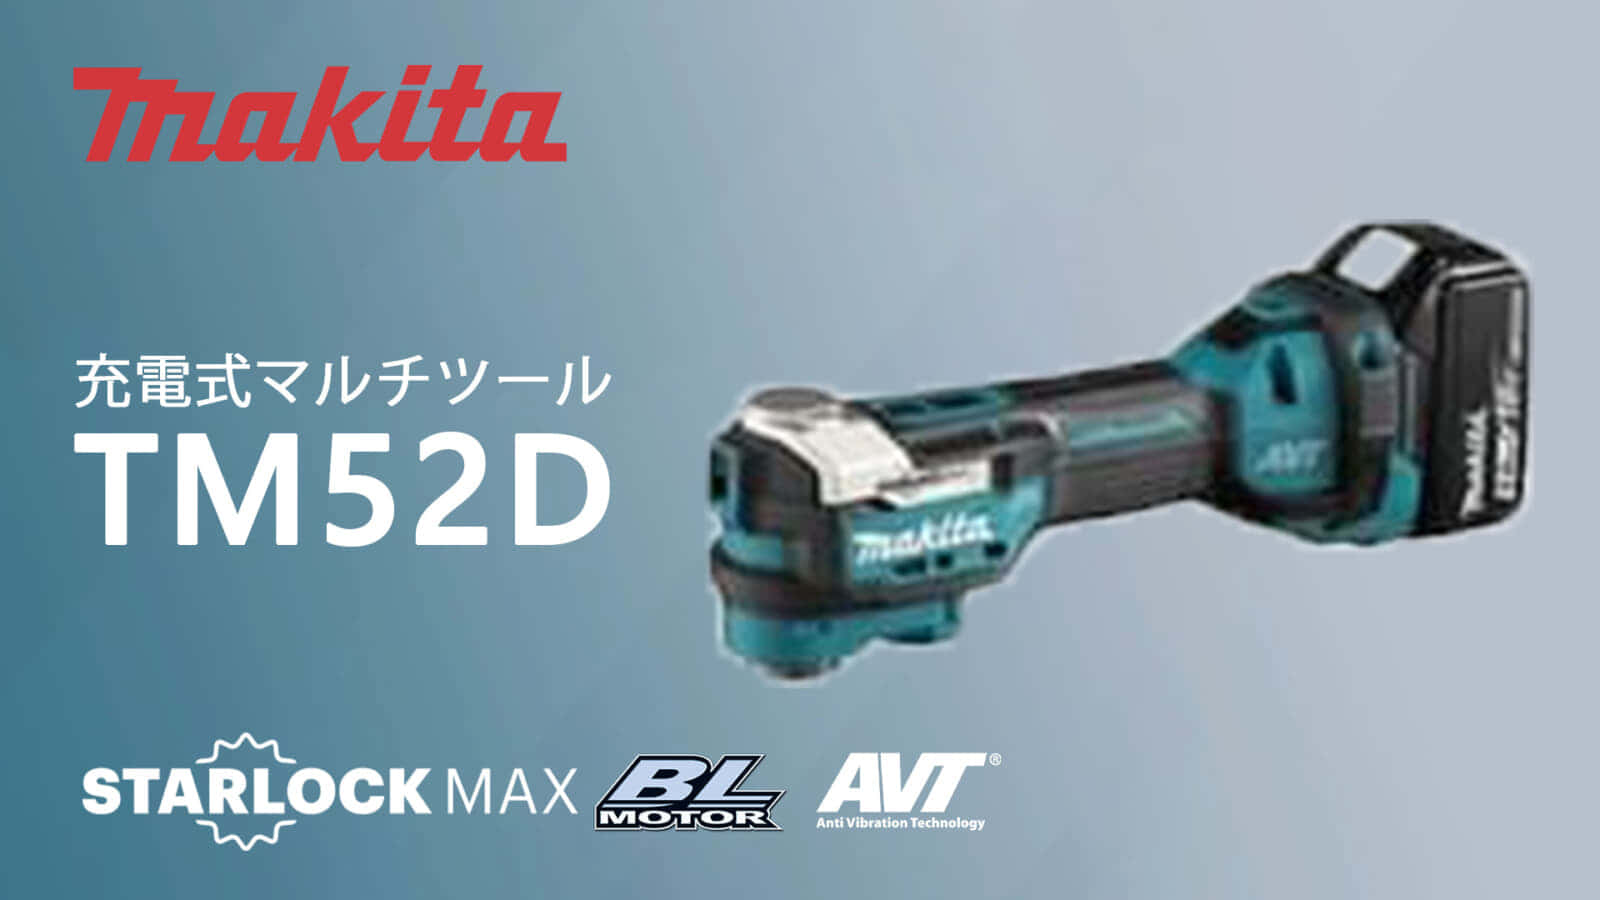 マキタ TM52D 充電式マルチツールを発売、スターロック対応モデル ｜ VOLTECHNO